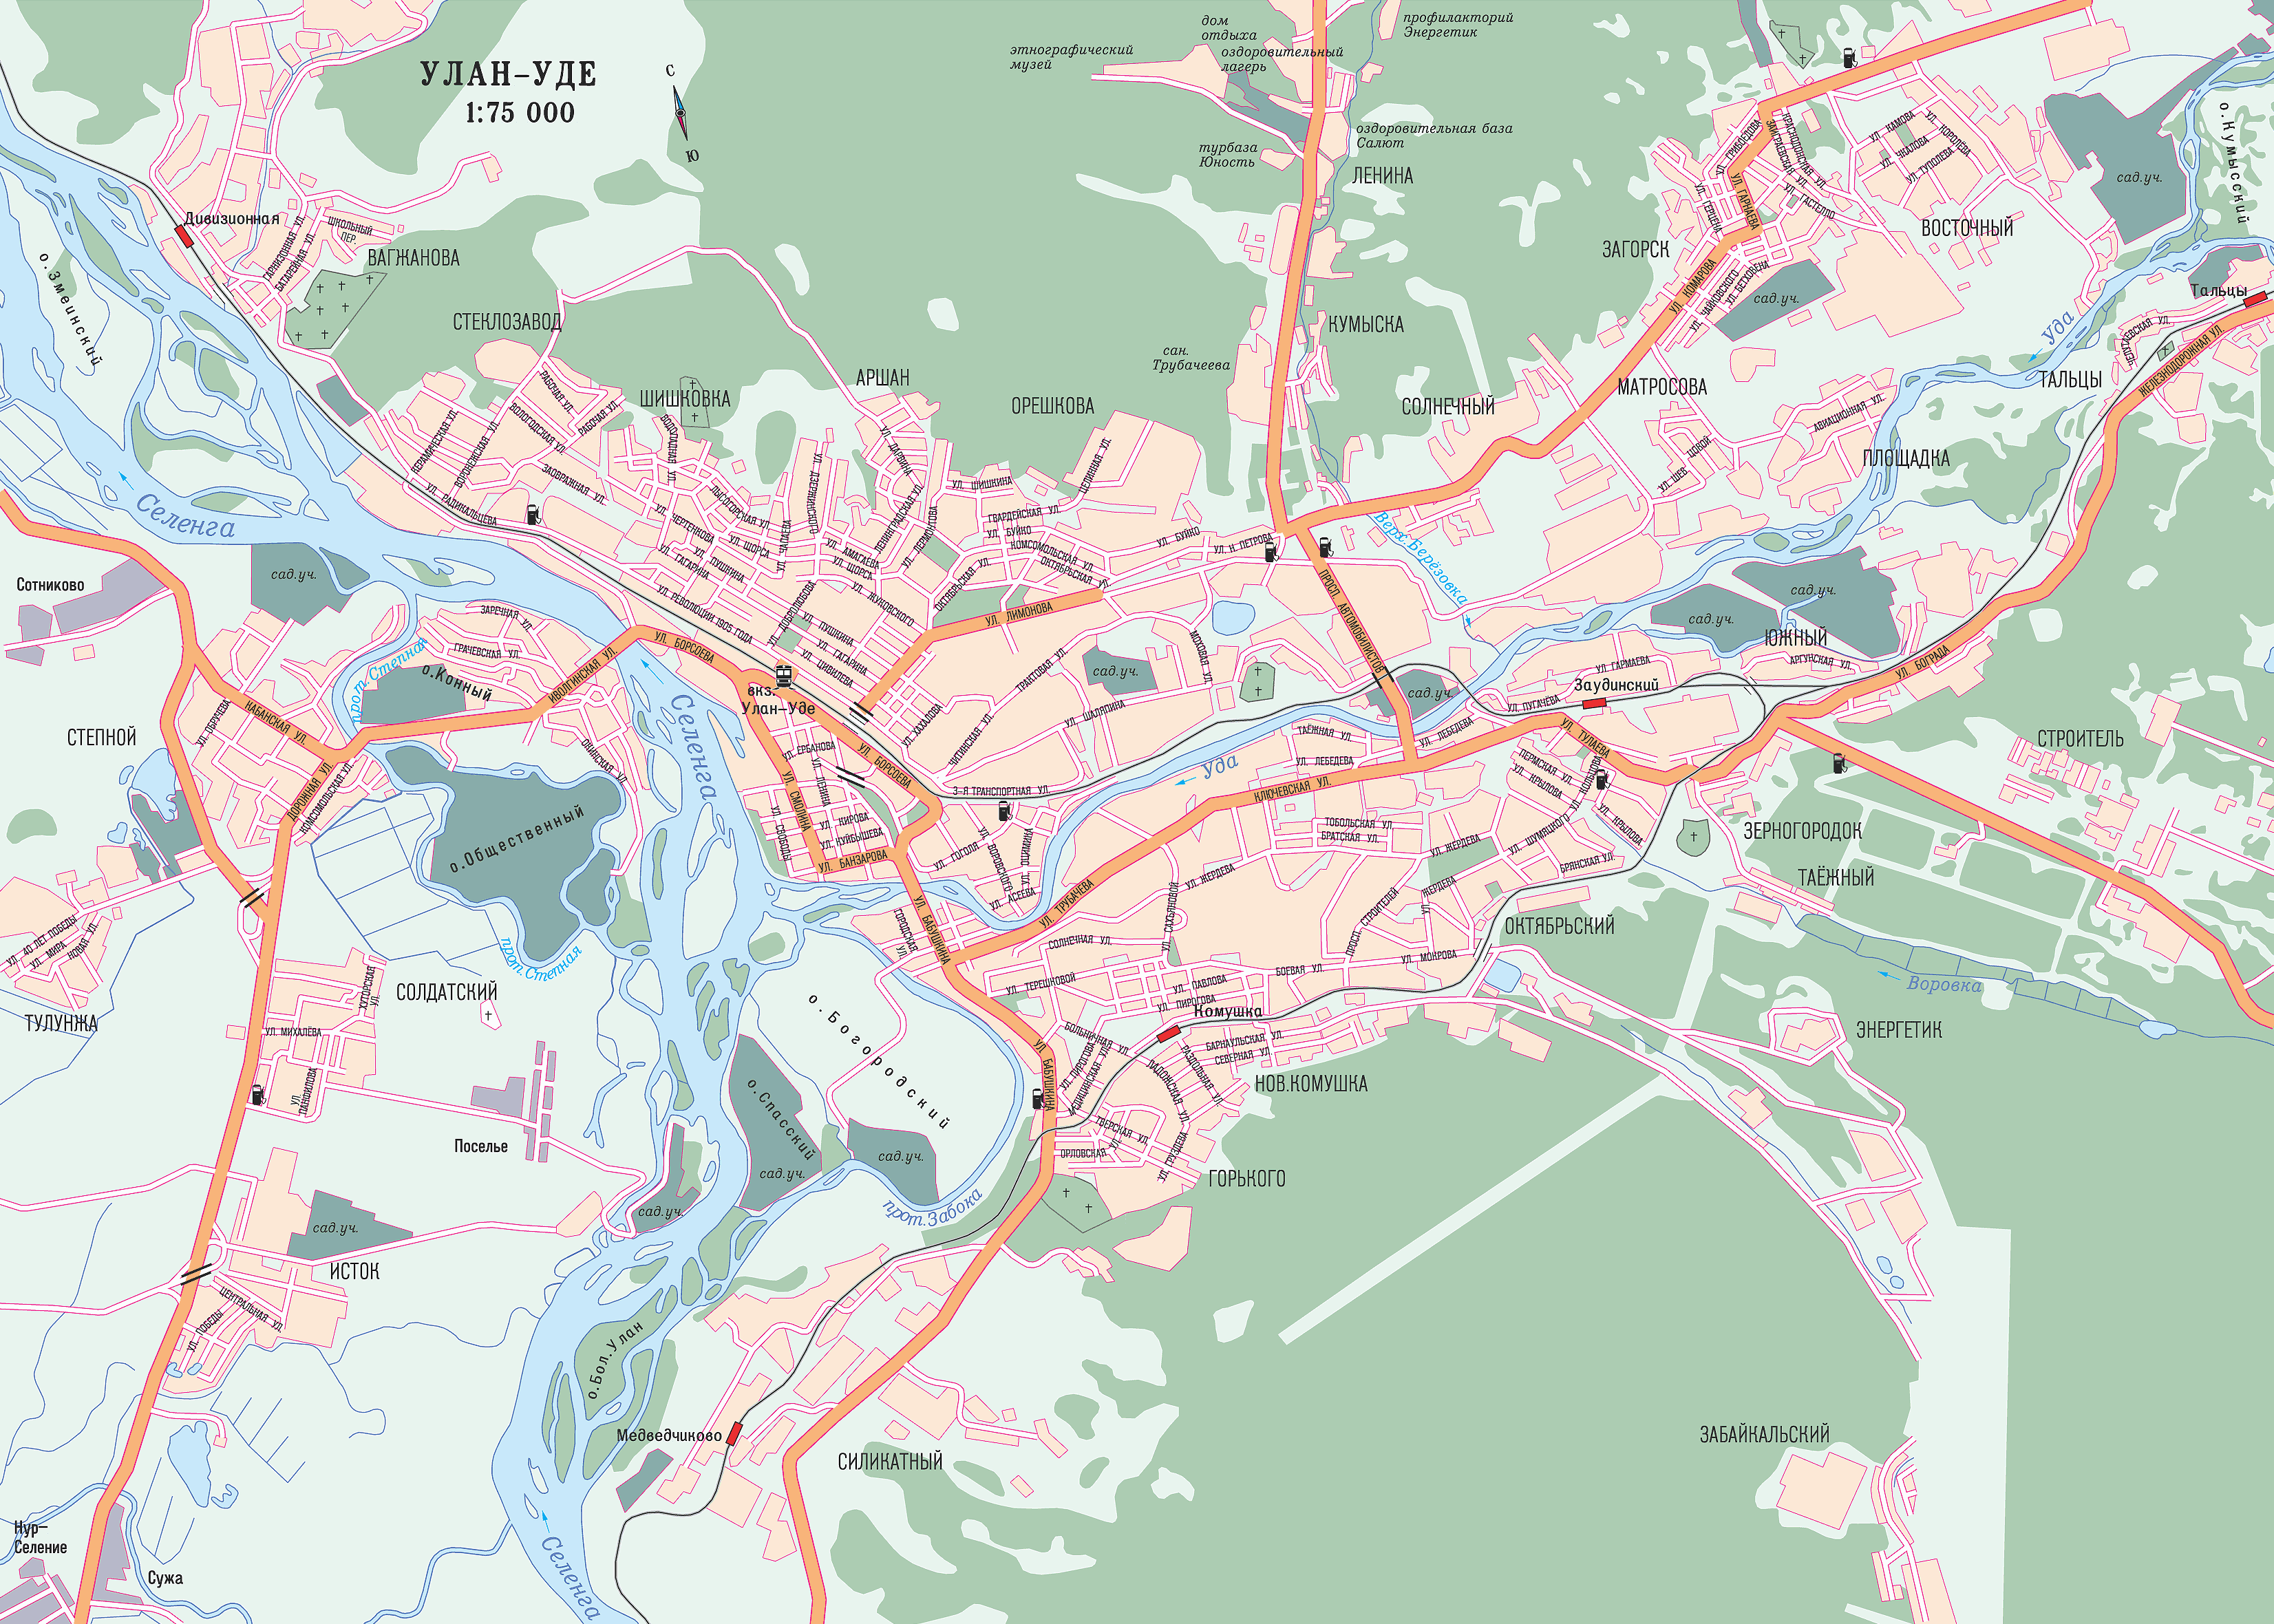 Map of Ulan-Ude